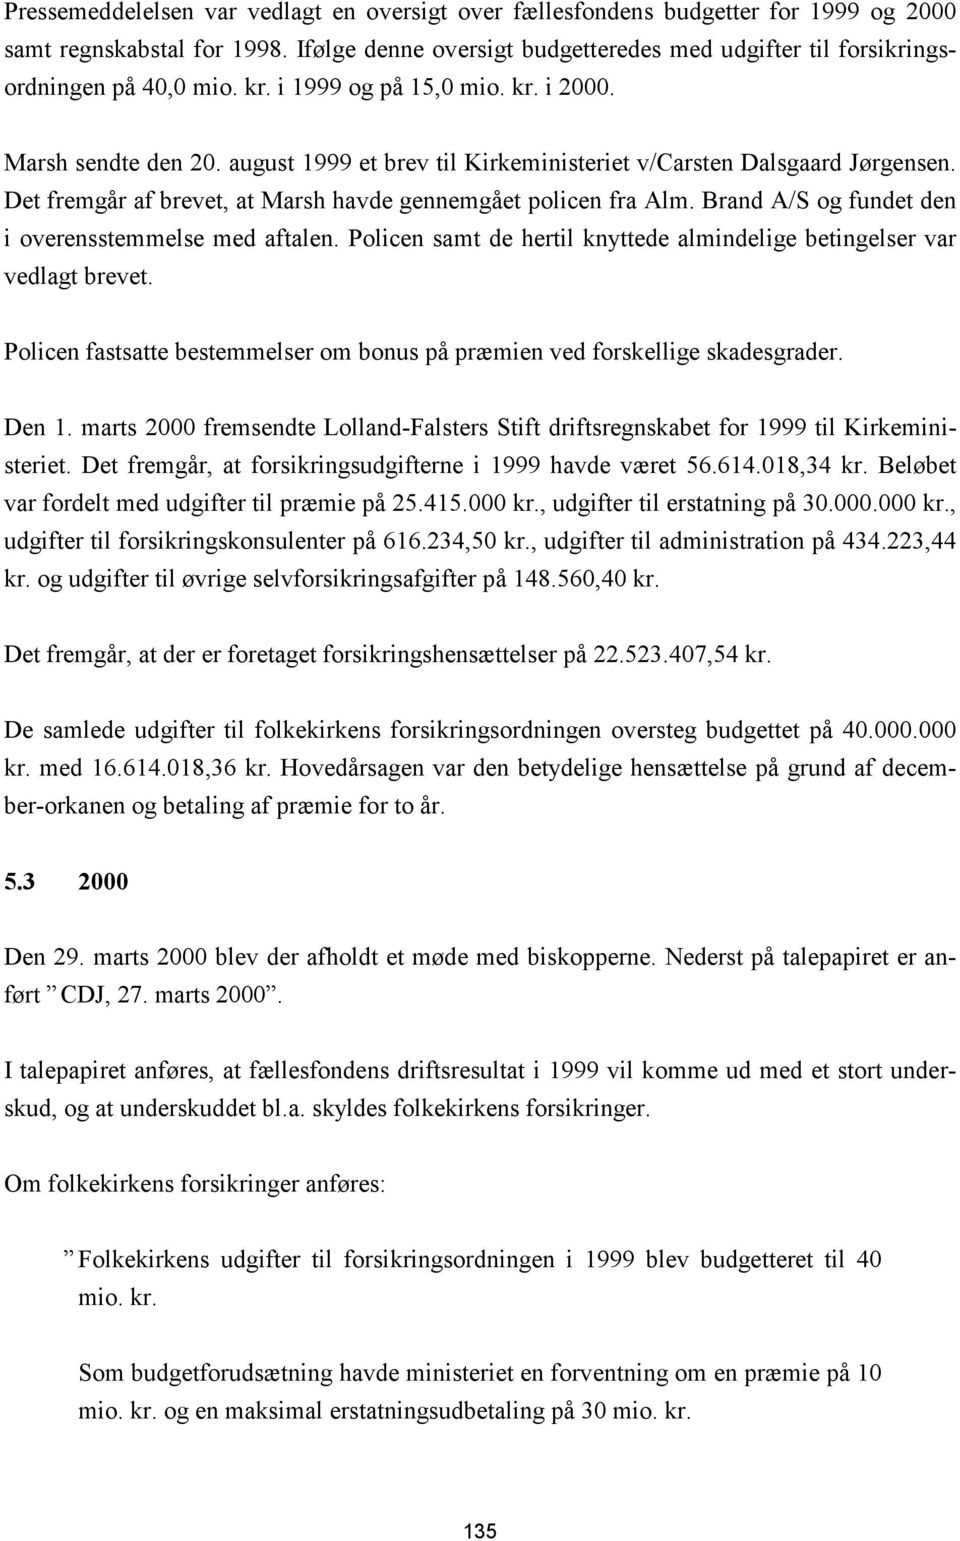 august 1999 et brev til Kirkeministeriet v/carsten Dalsgaard Jørgensen. Det fremgår af brevet, at Marsh havde gennemgået policen fra Alm. Brand A/S og fundet den i overensstemmelse med aftalen.